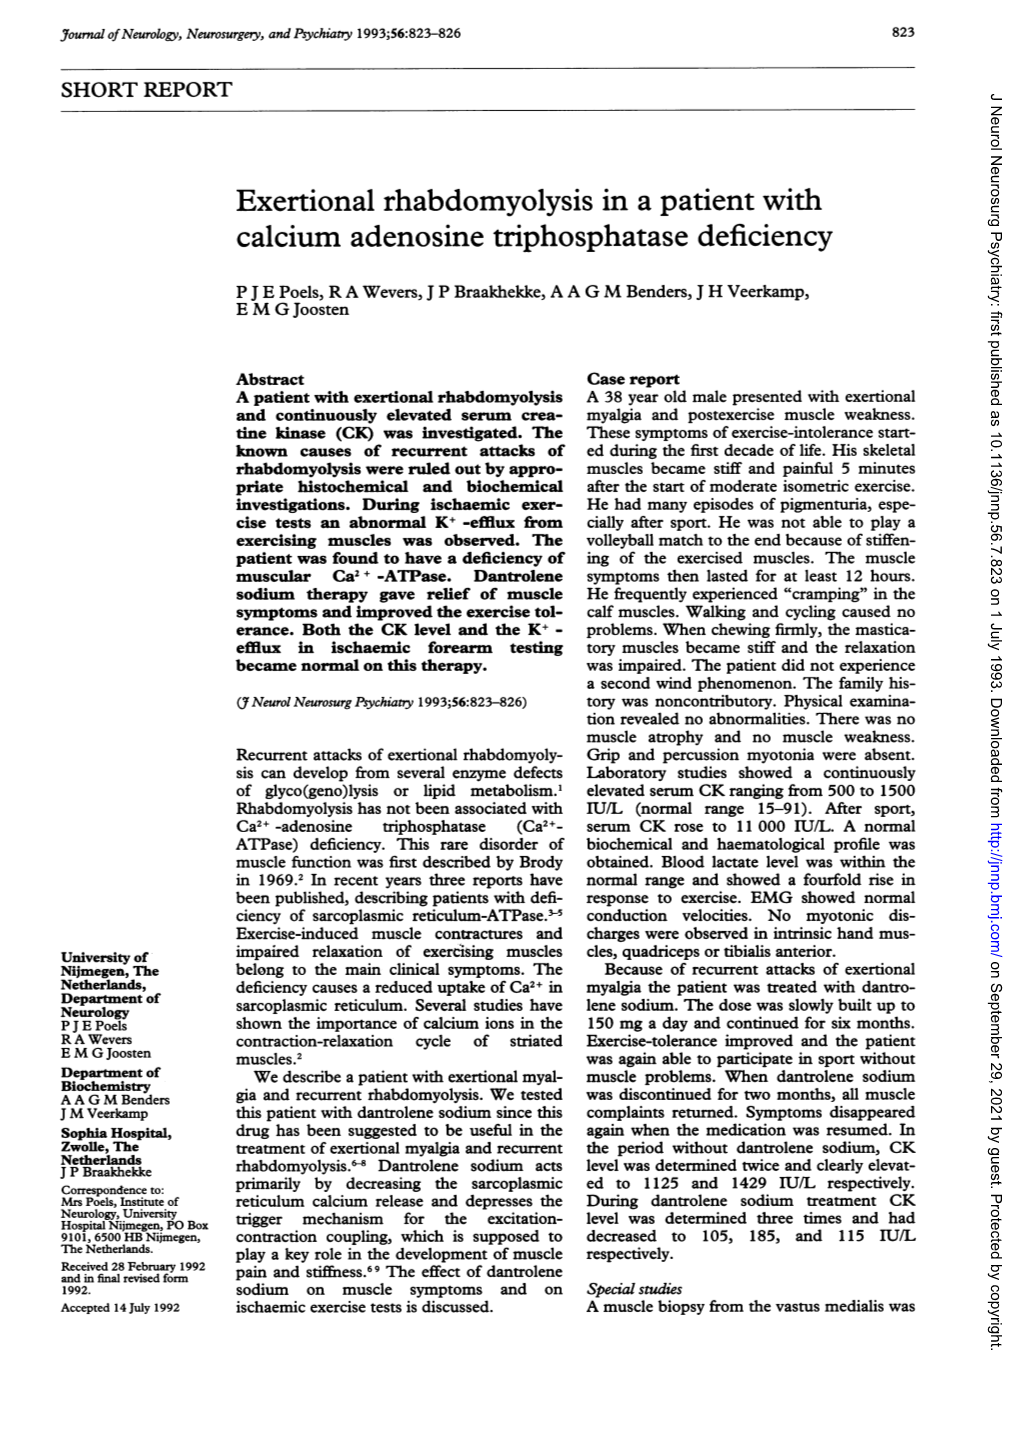 Exertional Rhabdomyolysis in a Patient with Calcium Adenosine Triphosphatase Deficiency